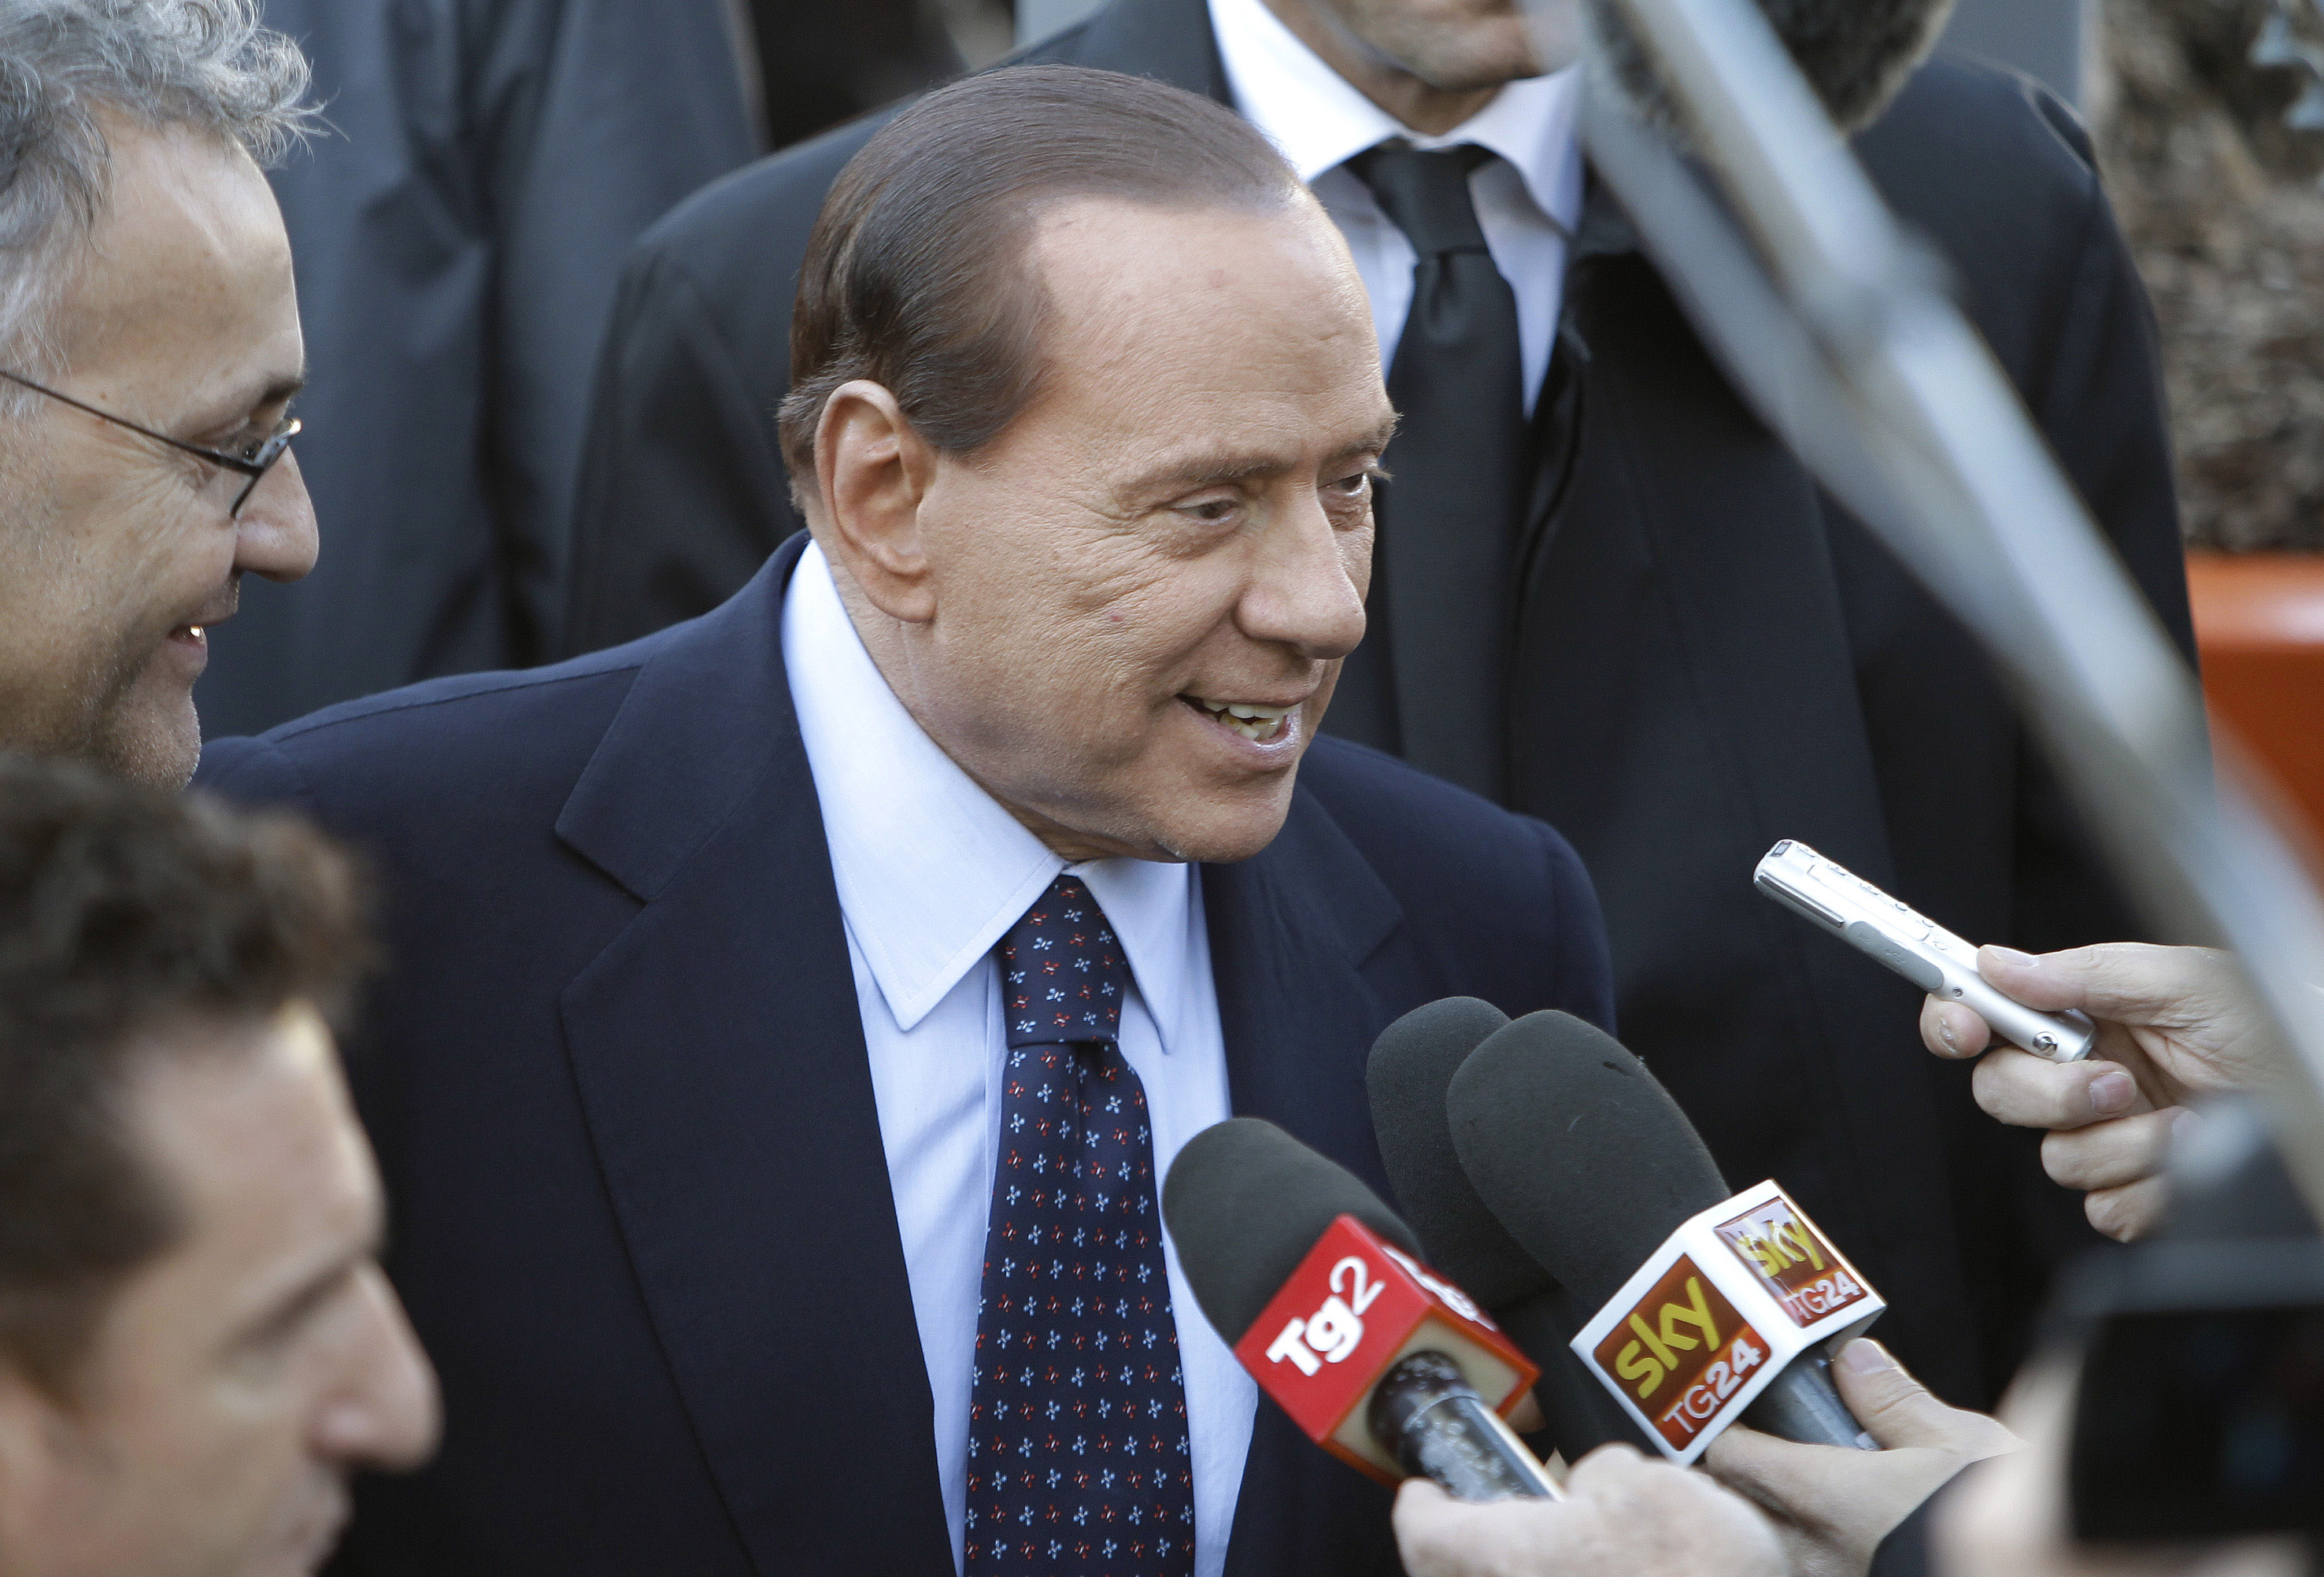 Efter 17 år vid makten avgick Italiens premiärminister Silvio Berlusconi 12 november 2011 till följd av den massiva pressen på honom pga. en dåligt skött ekonomi. Hans tid vid makten kantades av sexskandaler och korruptionsanklagelser.